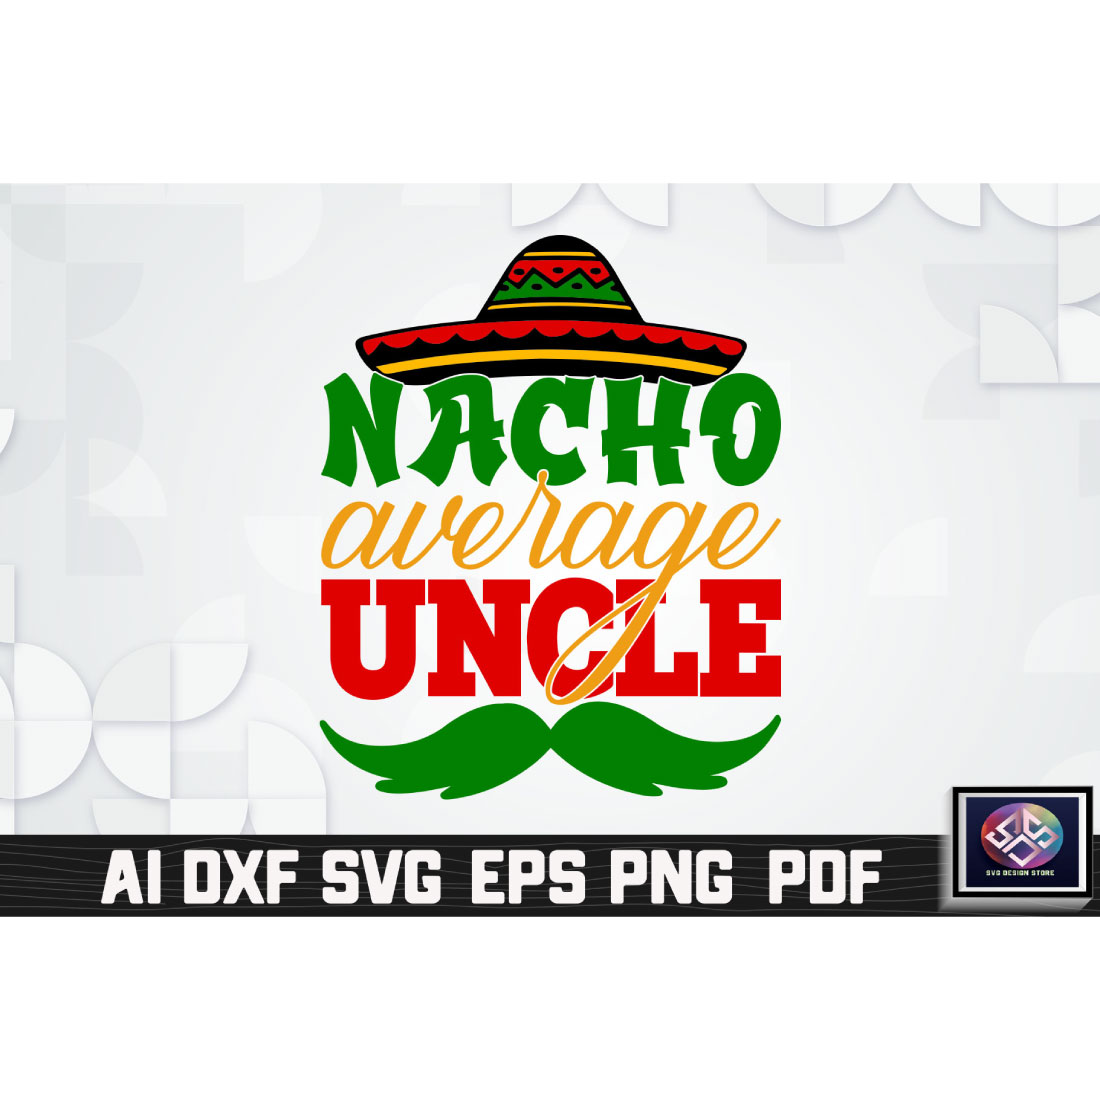 Nacho Average Uncle cover image.